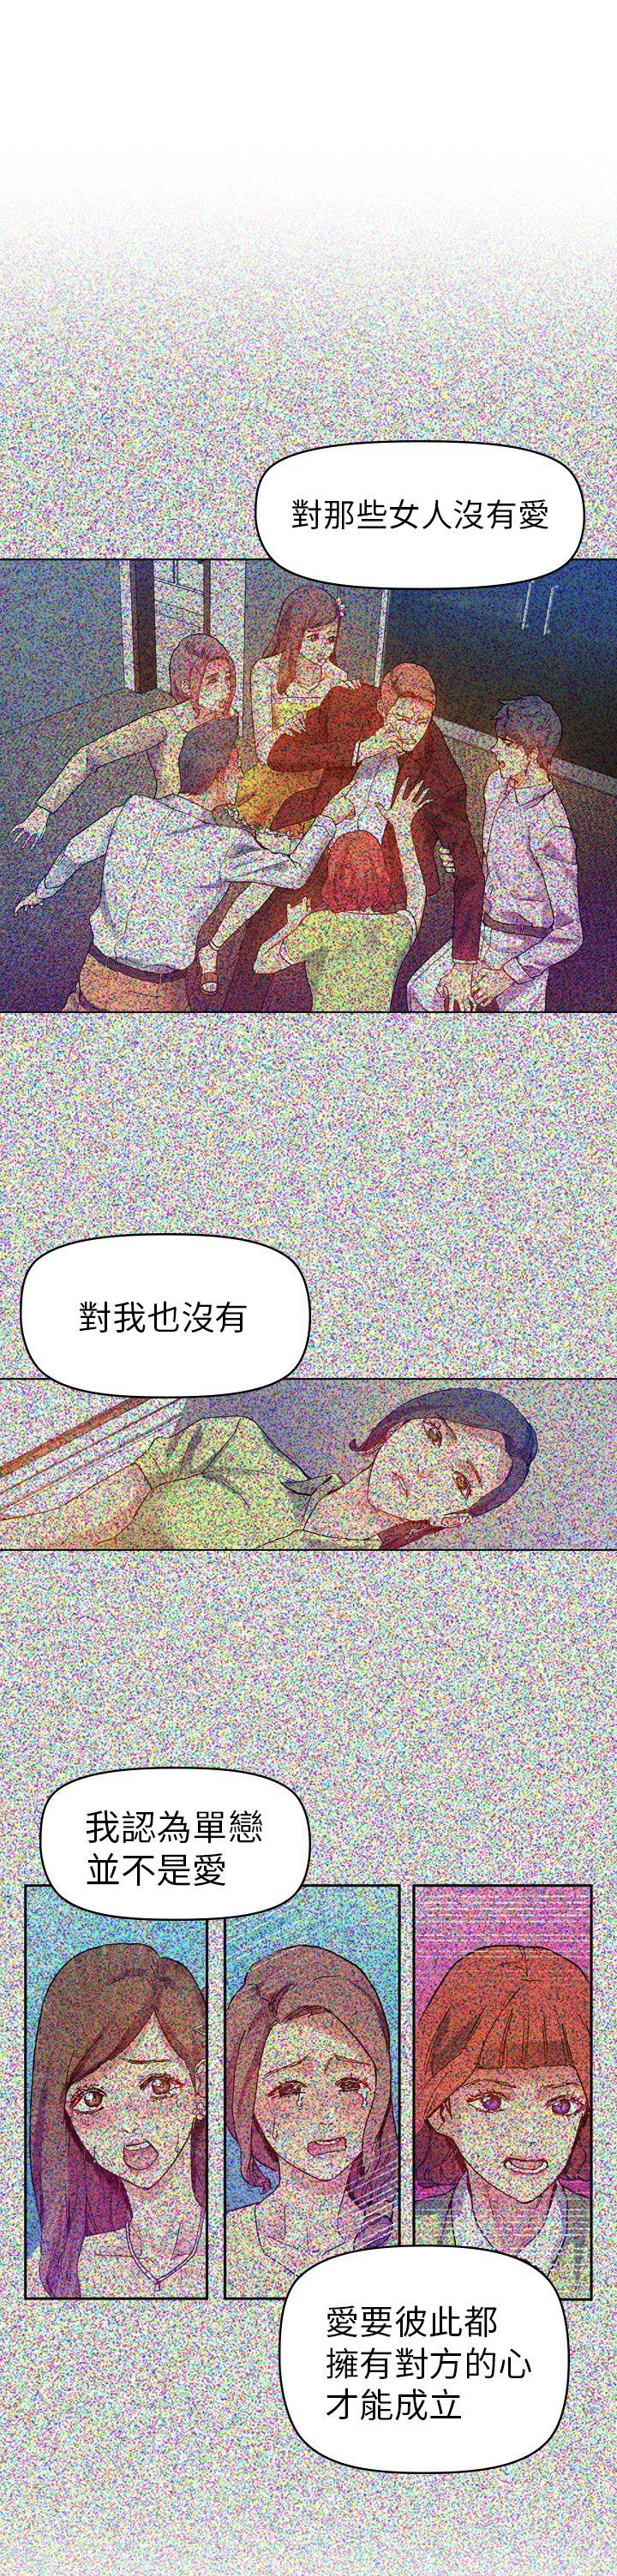 韩国污漫画 幻想中的她(完結) 第18话 20